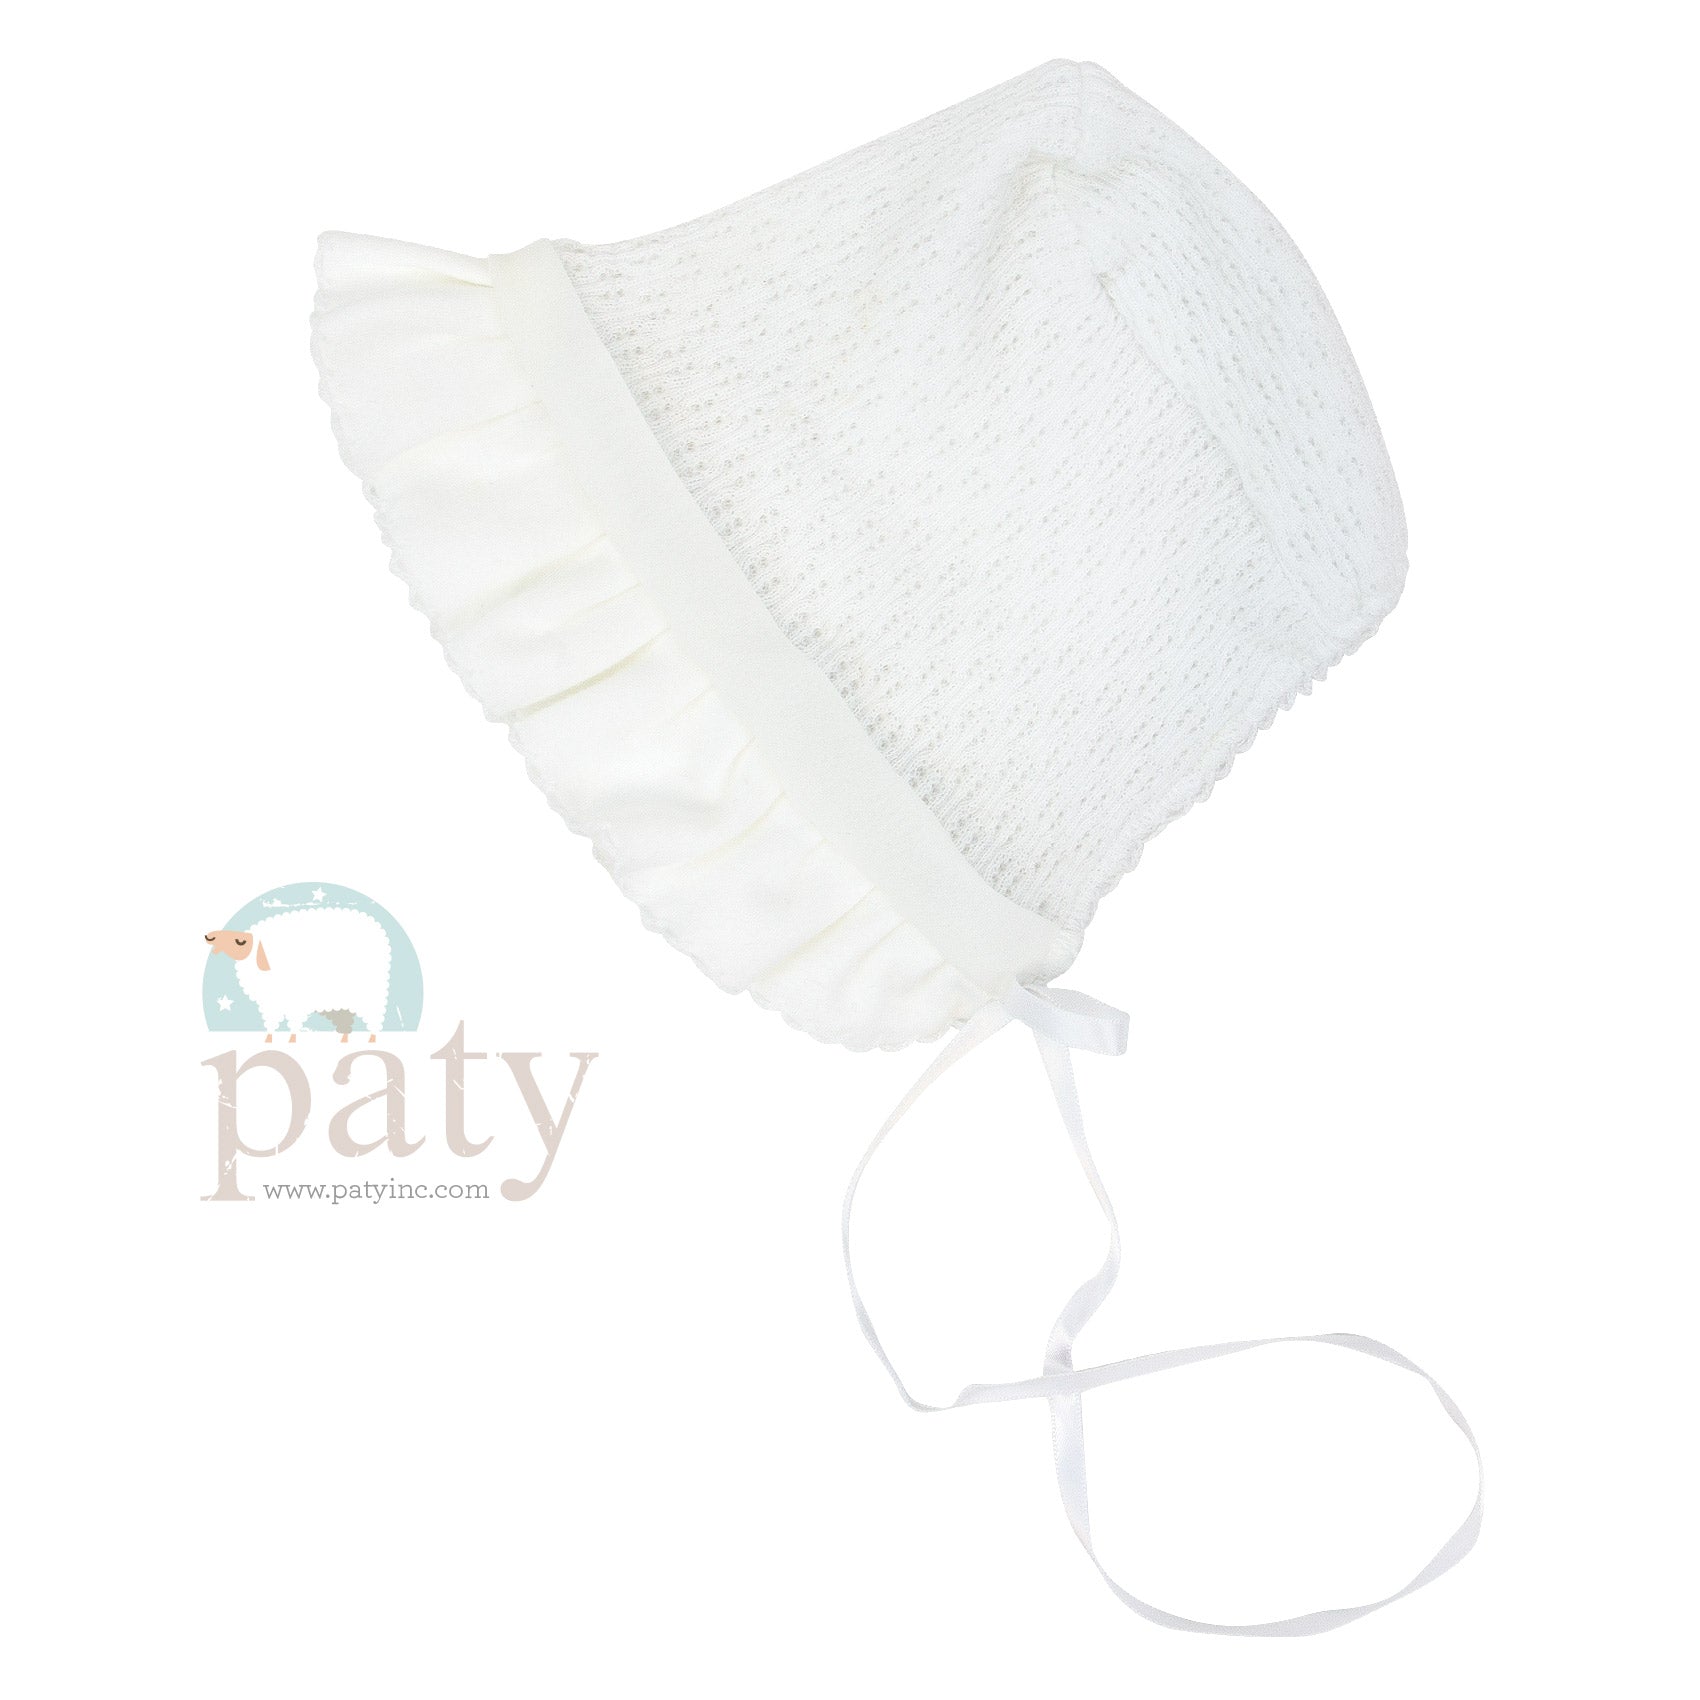 White Paty Knit Bonnet w/ White Cotton & Chiffon Trim